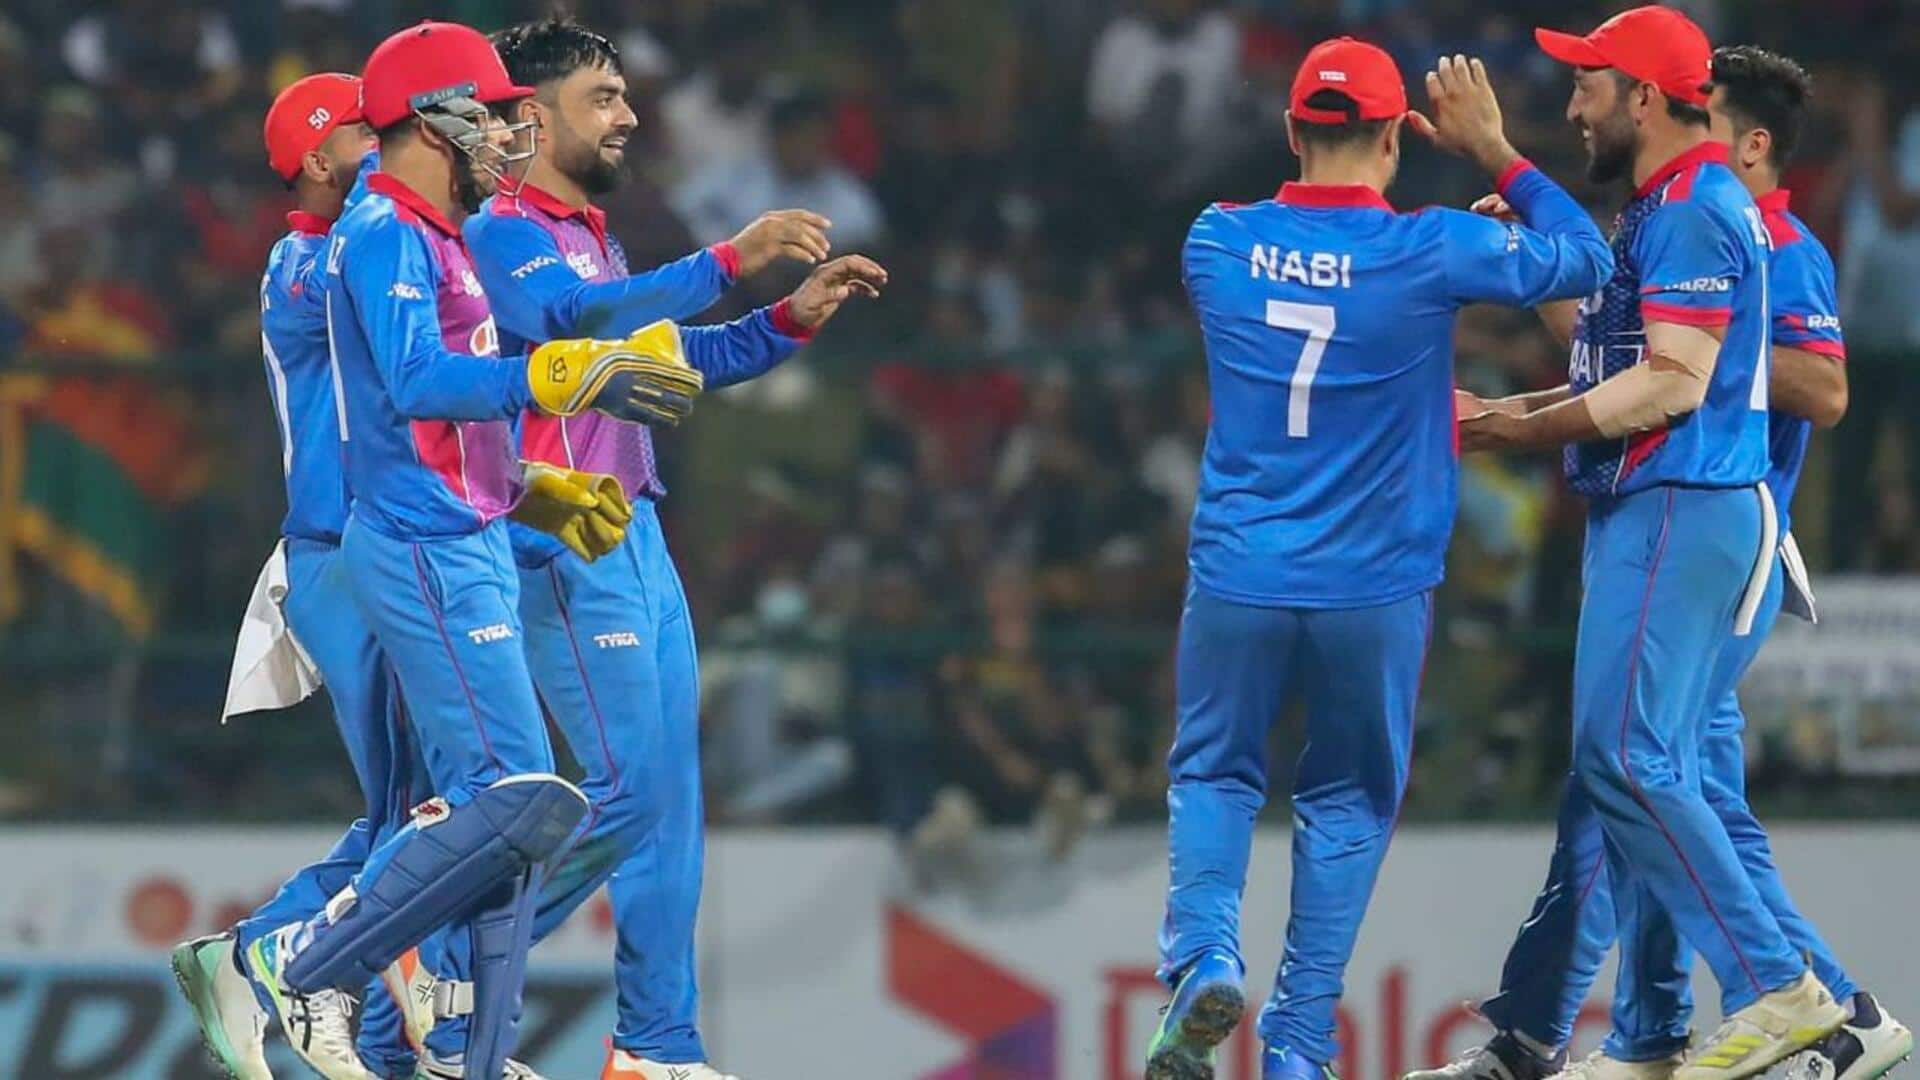 UAE के खिलाफ टी-20 सीरीज के लिए अफगानिस्तान की टीम घोषित 